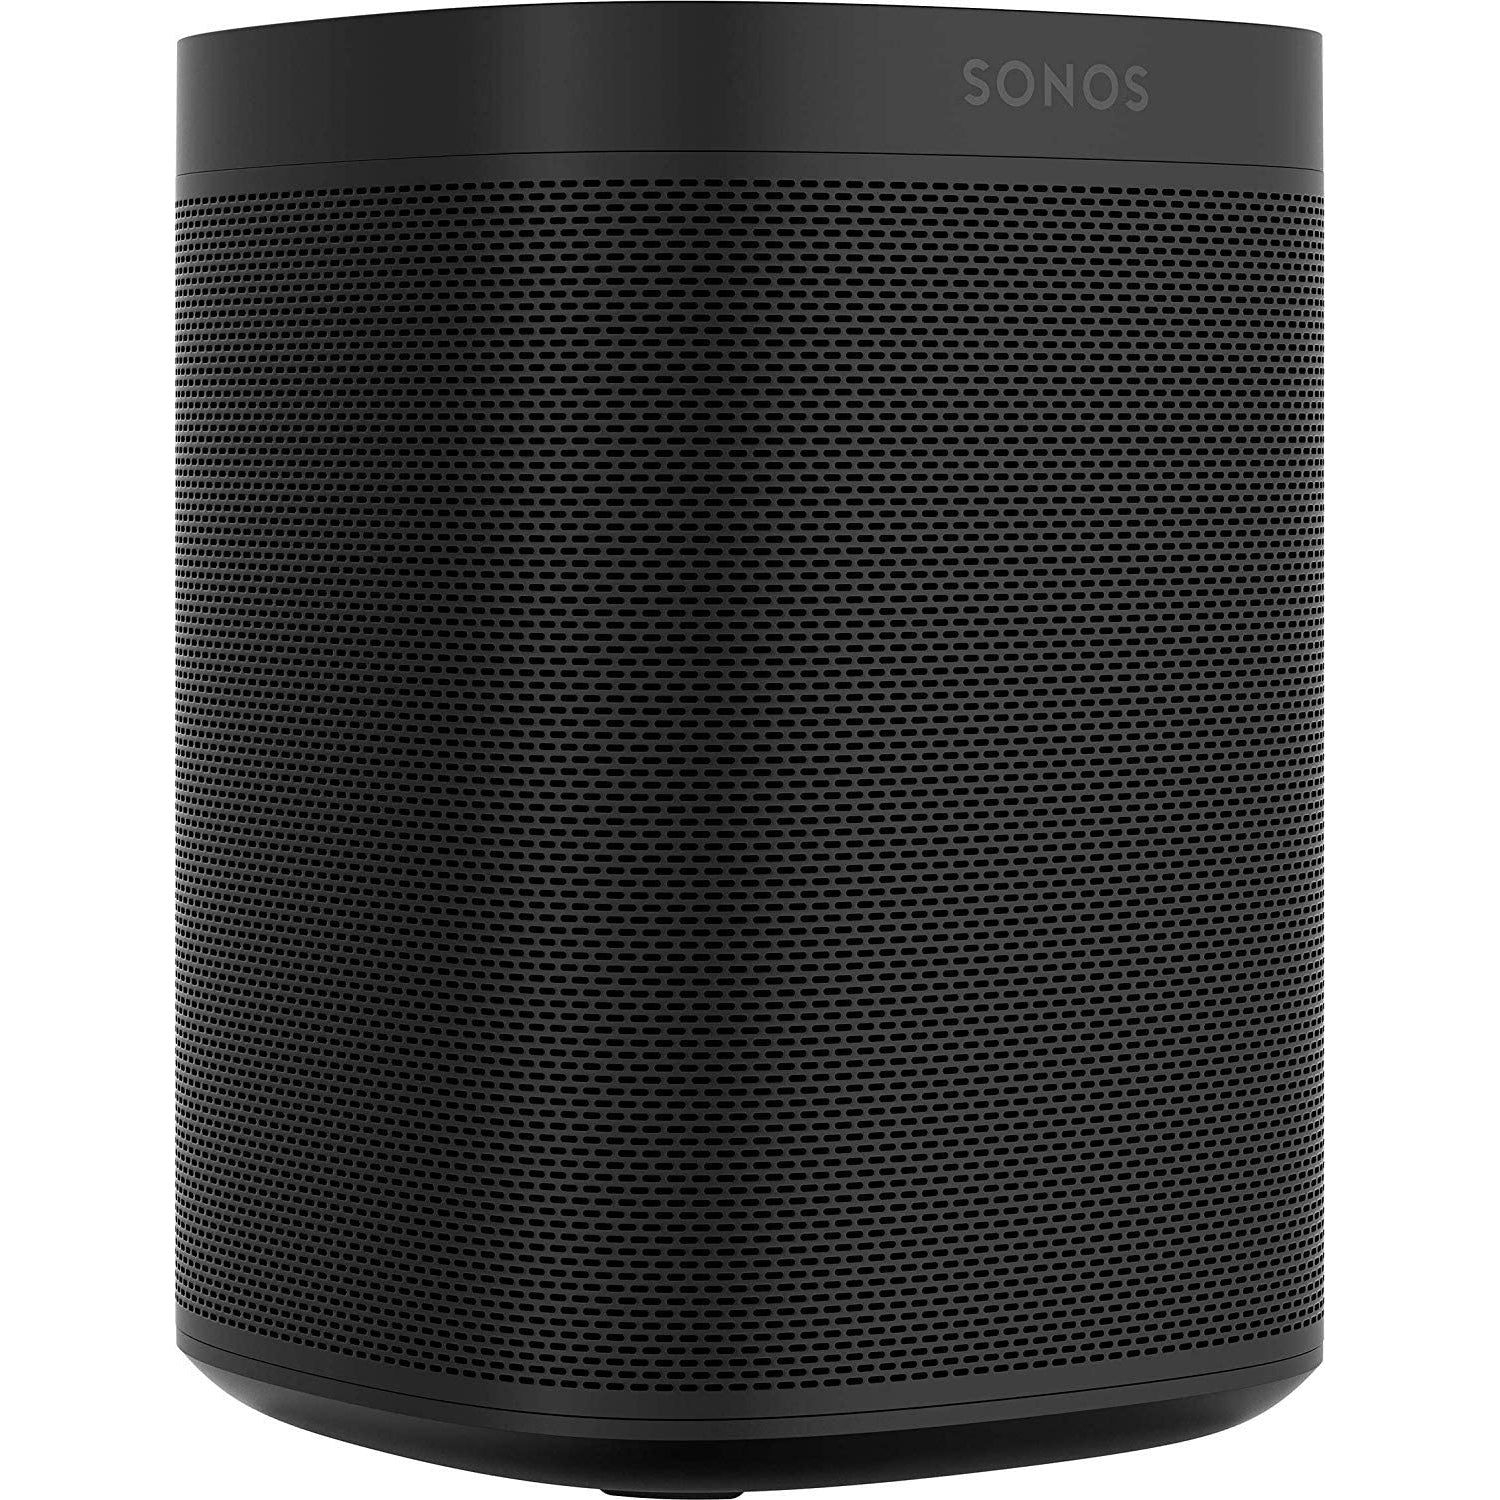 Sonos One Gen 2 Smart Speaker with Amazon Alexa Built-in - Black